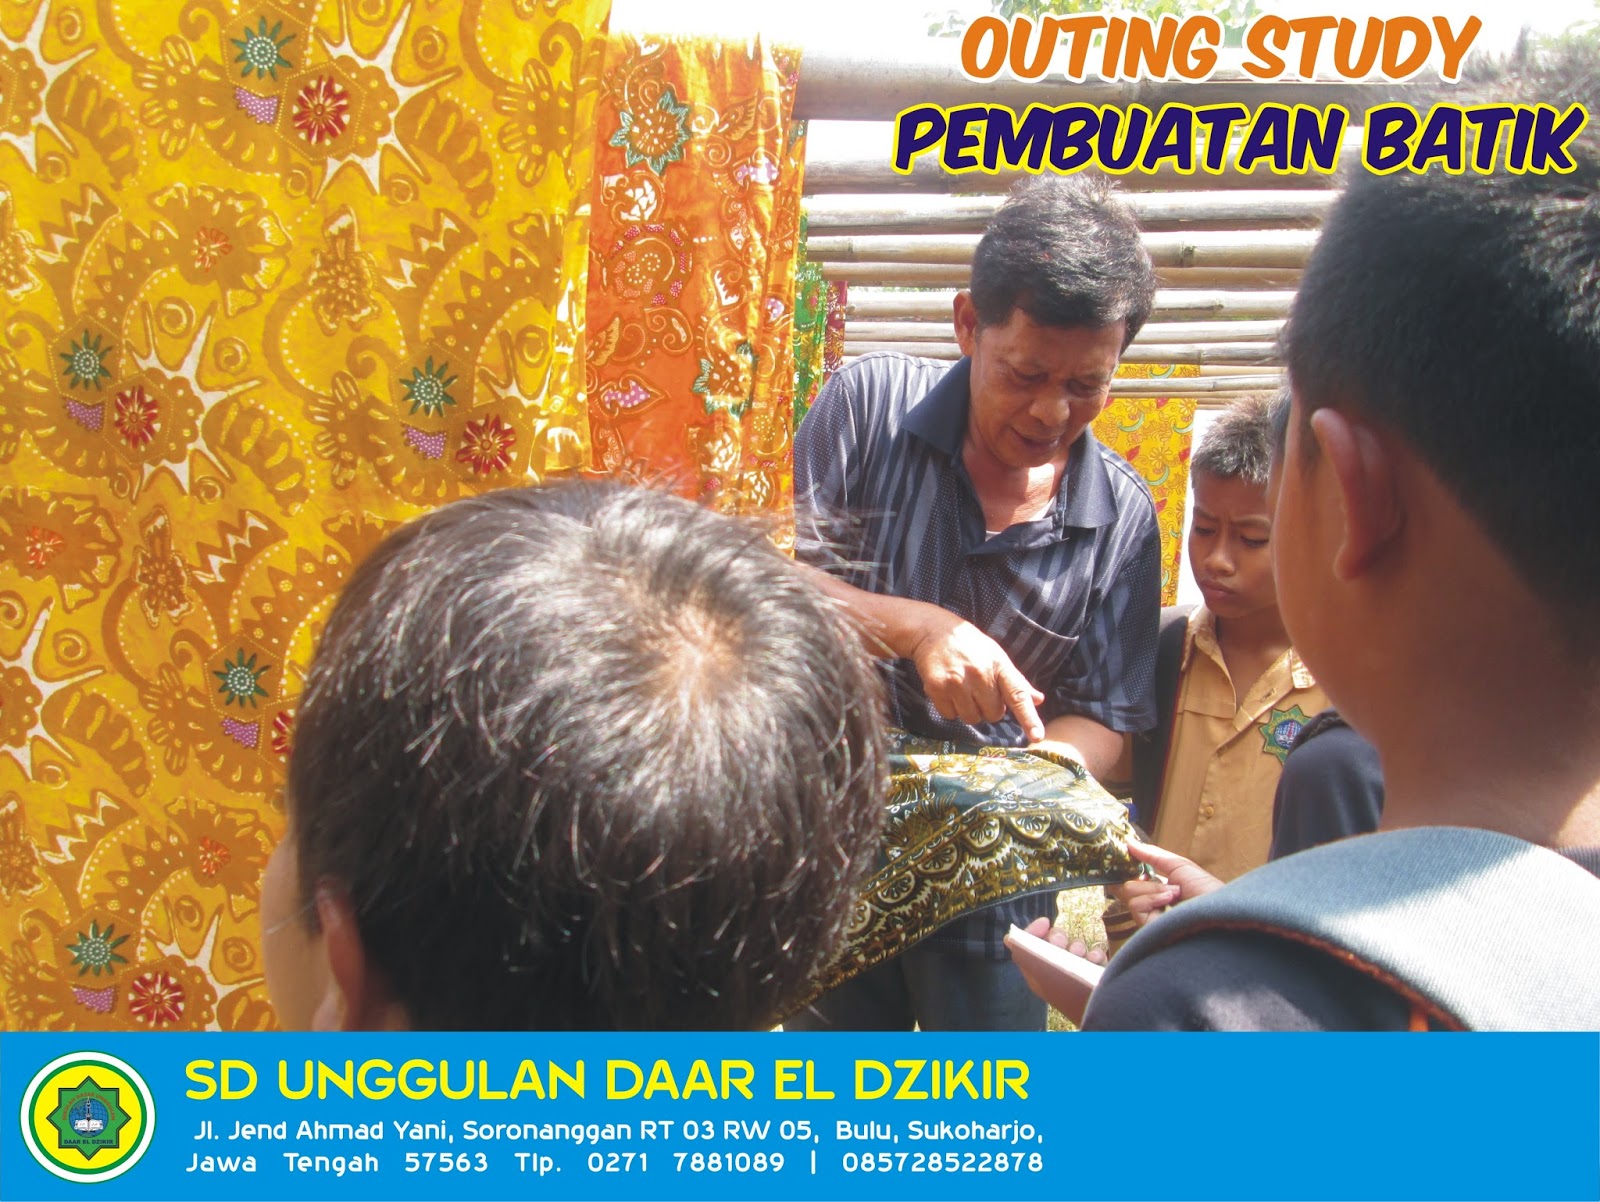 Pada bulan Oktober ini siswa siswi kelas 4 sampai kelas 6 mengadakan outing study Kali ini mengunjungi dua tempat home industri yaitu pembuatan batik